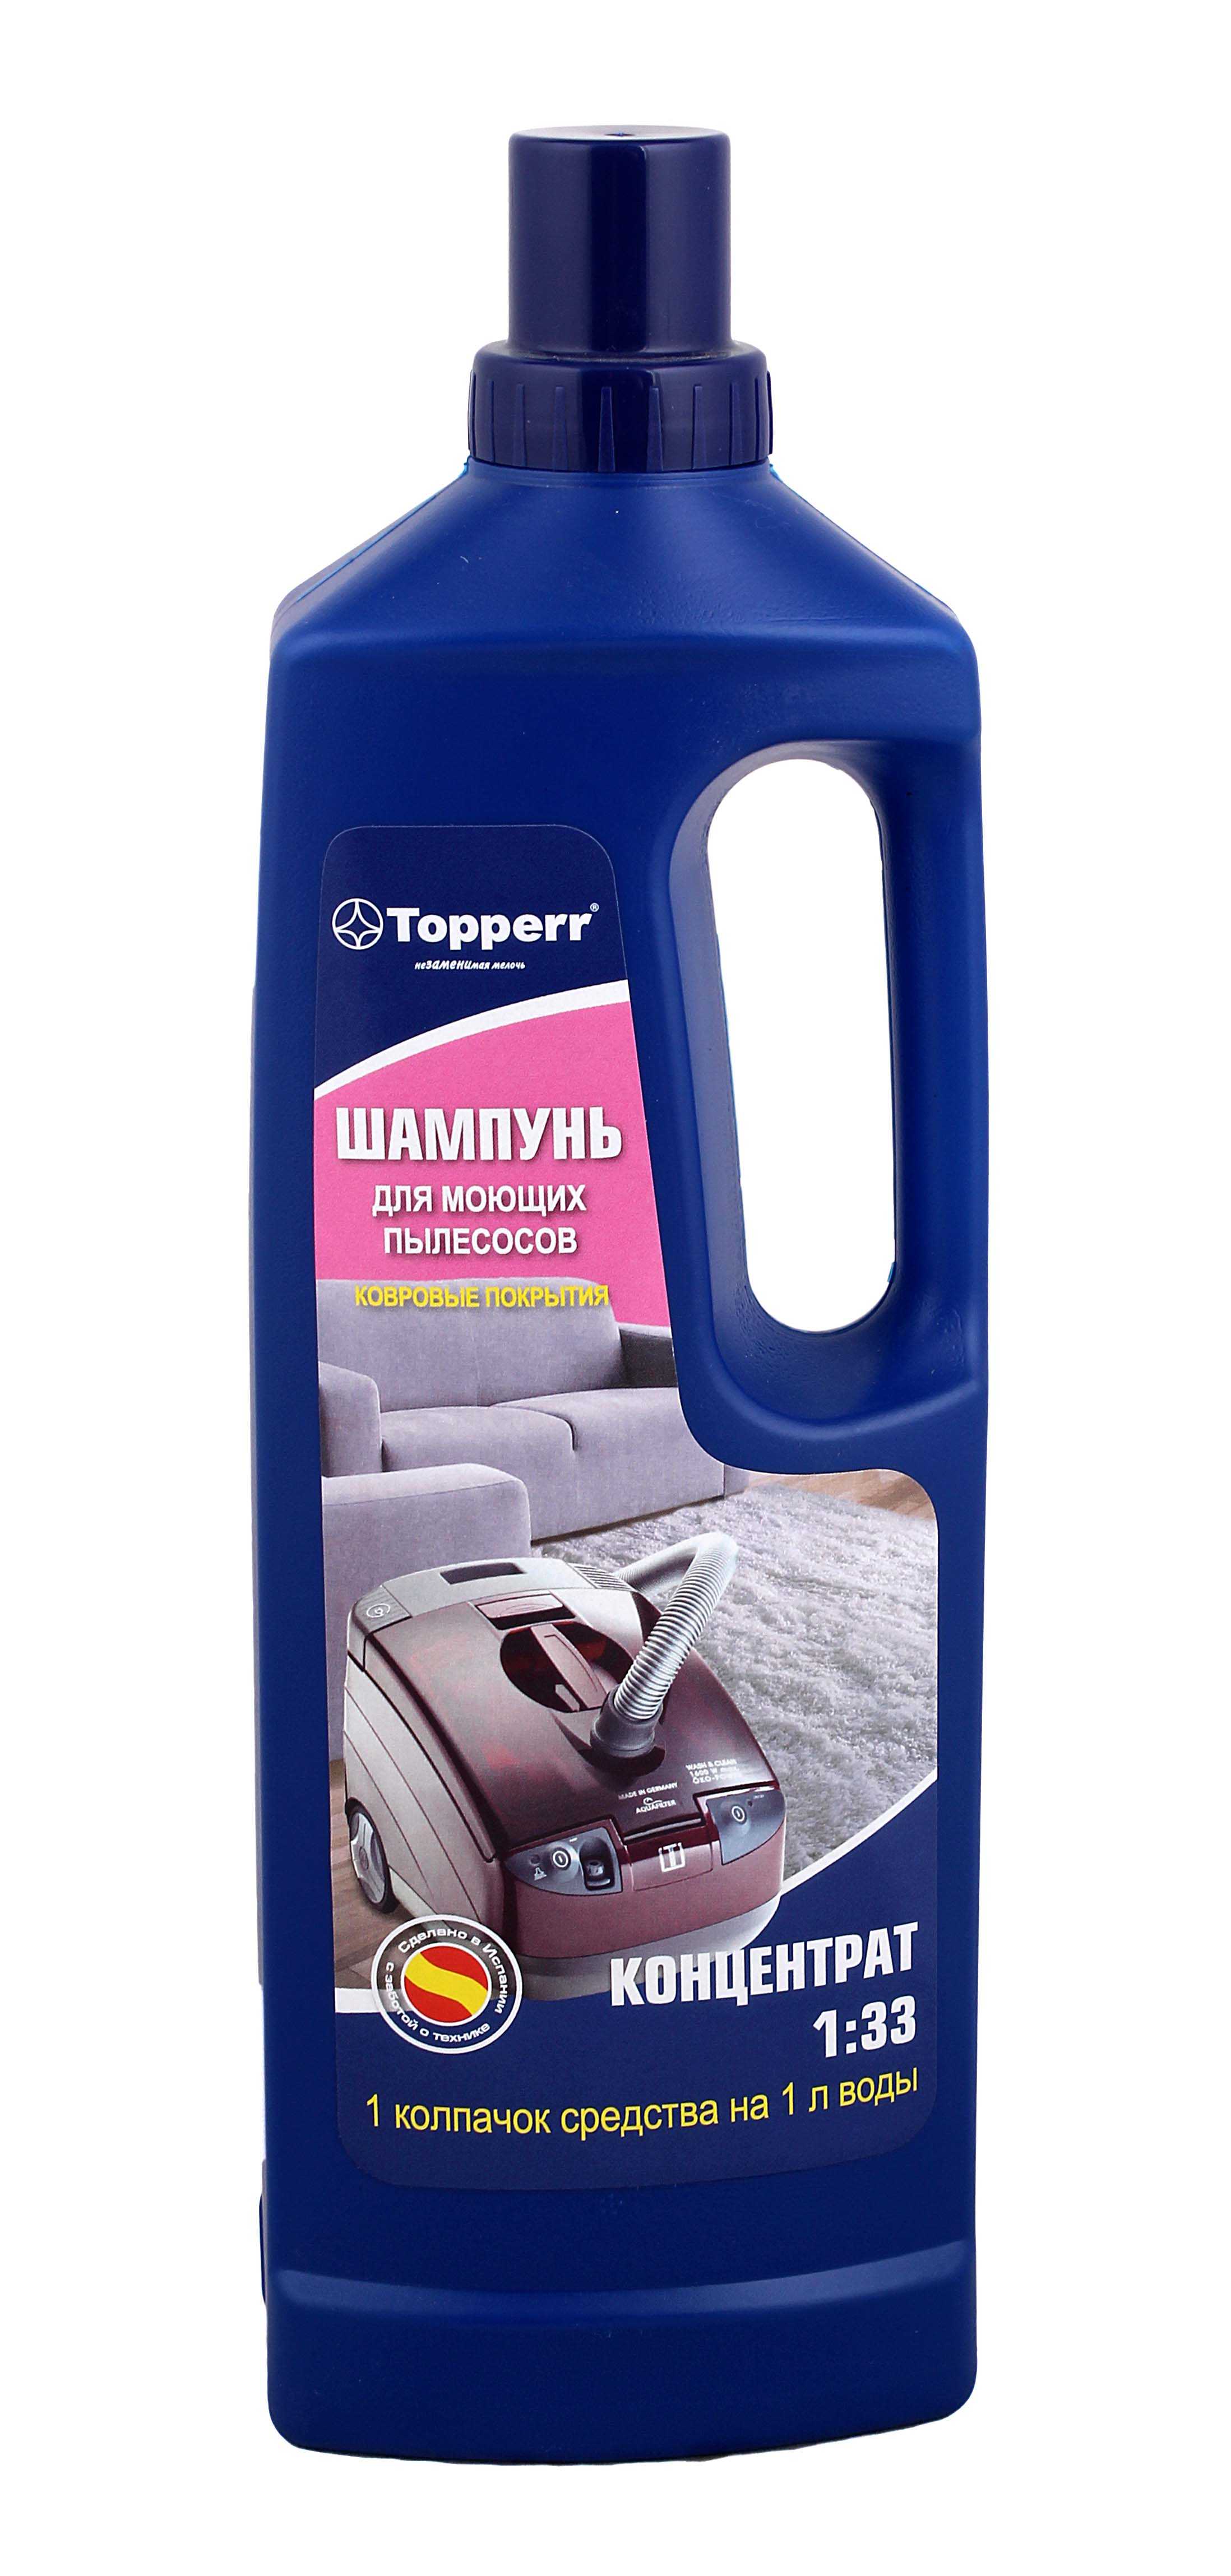 Topperr шампунь для моющих пылесосов